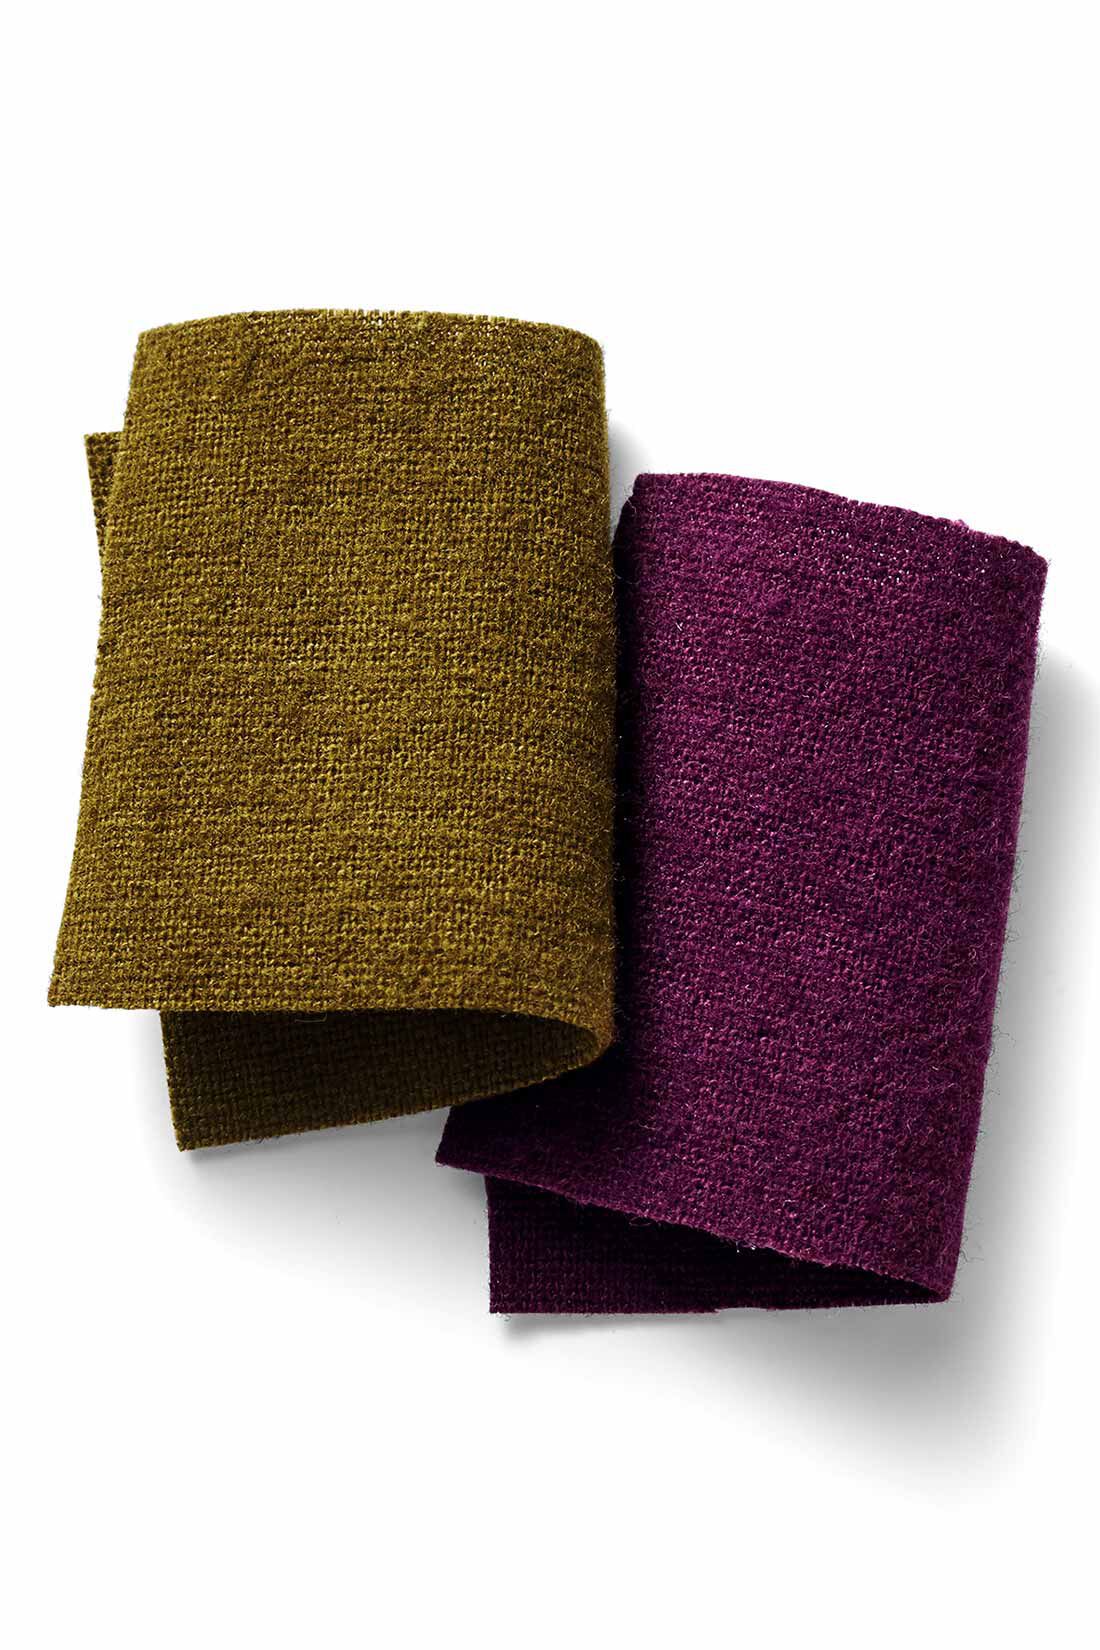 MEDE19F|MEDE19F　麻混起毛素材のジャンプスーツ〈オリーブ〉|さっくり軽いタッチの綿麻キャンバス素材。表面を掻いて起毛させ、上品なあたたかみとやわらかさを付与しています。